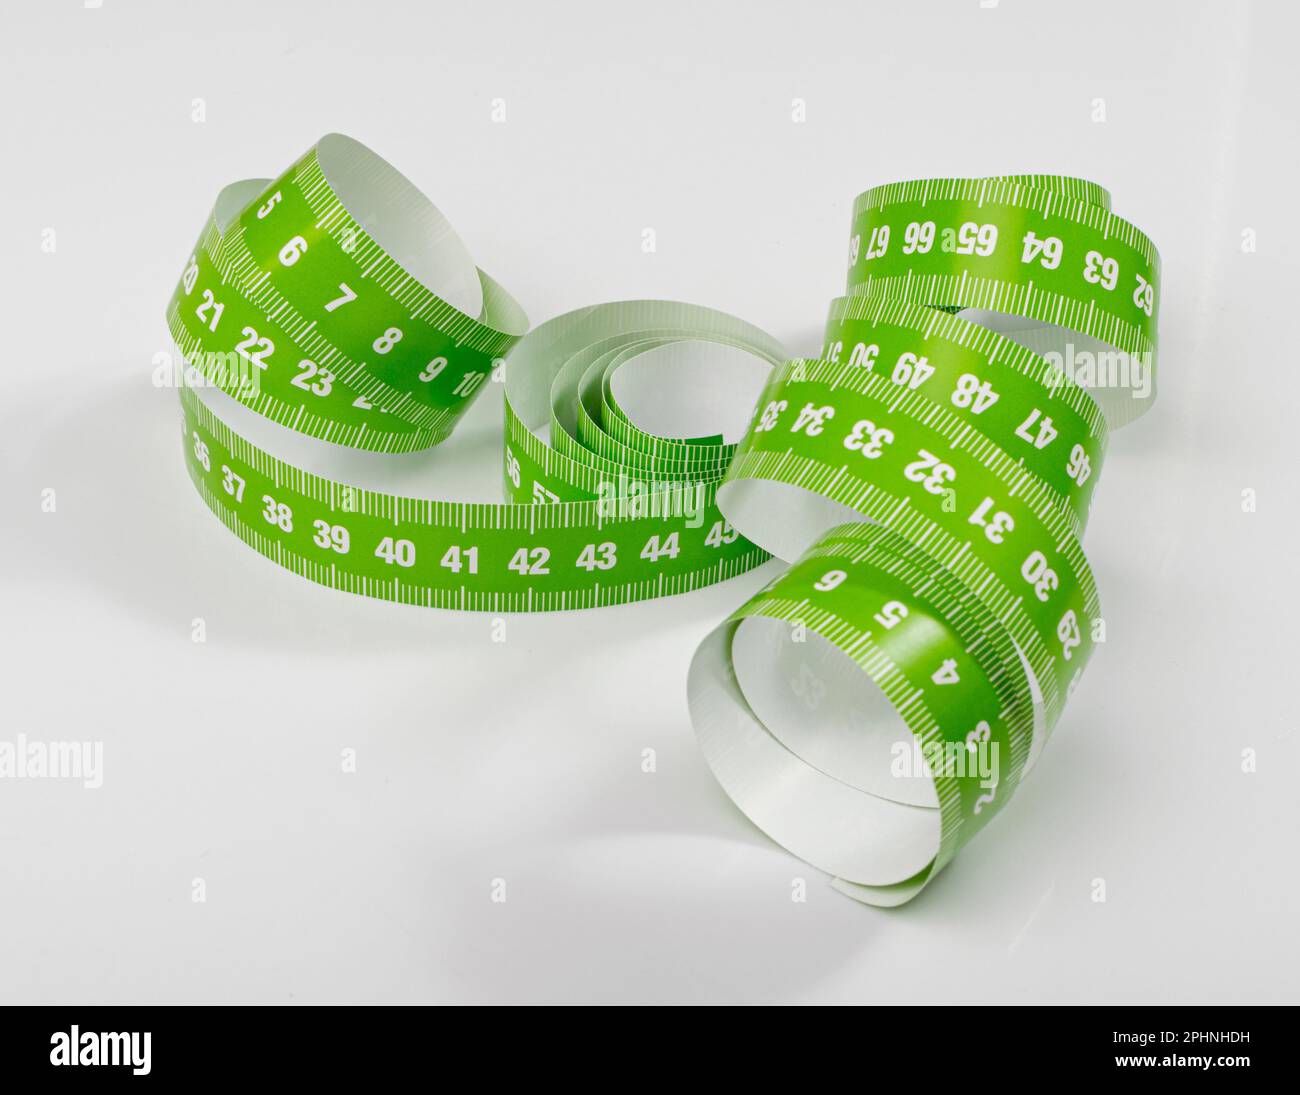 Ruban de mesure, rubans de mesure verts, couture de ruban métrique sur fond blanc Banque D'Images